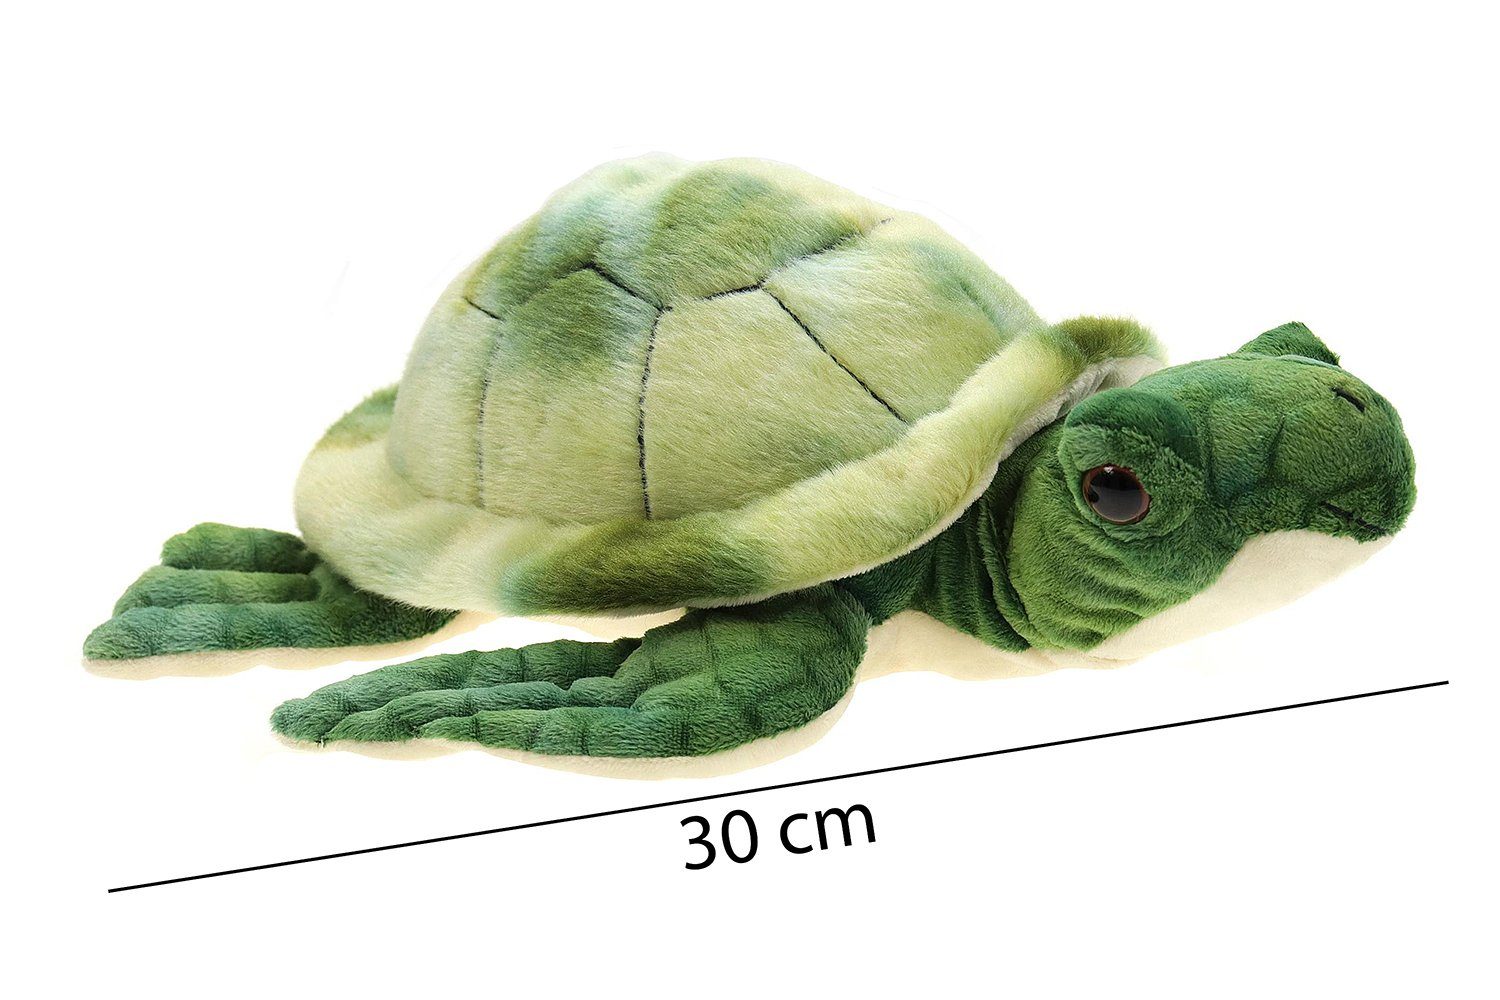 Schildkröte Plüsch Landschildkröte Geschenk Kind Stofftier Kuscheltier Geschenk 